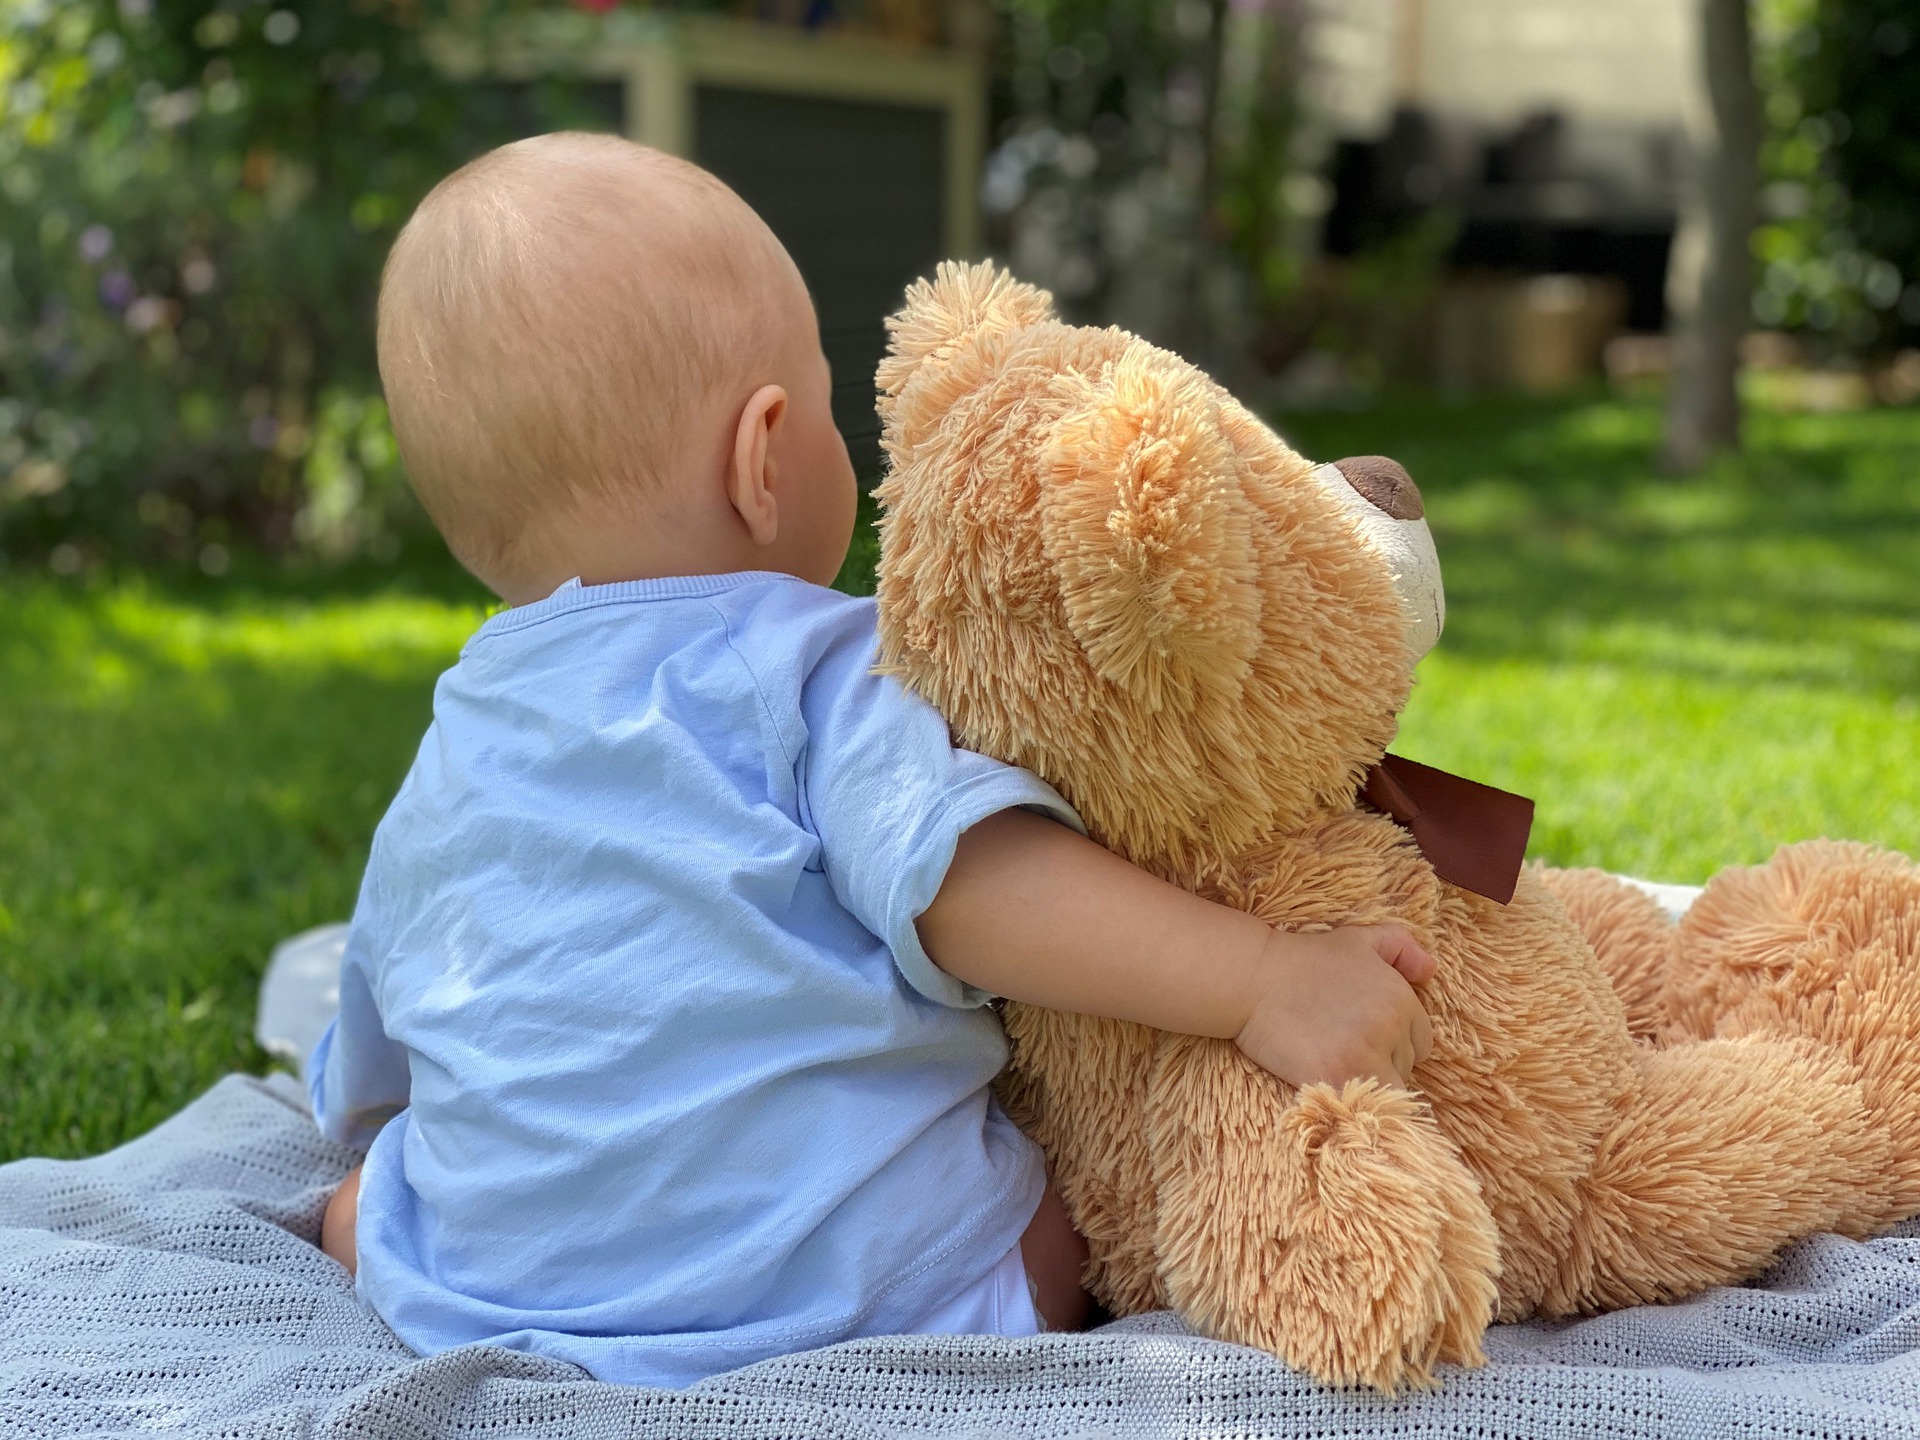 Kuvassa vauva, jolla on vaaleansininen paita, istuu selin kuvaajaan päin viltin päällä nurmikolla ja hänellä on ruskea, iso nalle vieressään kainalossa.